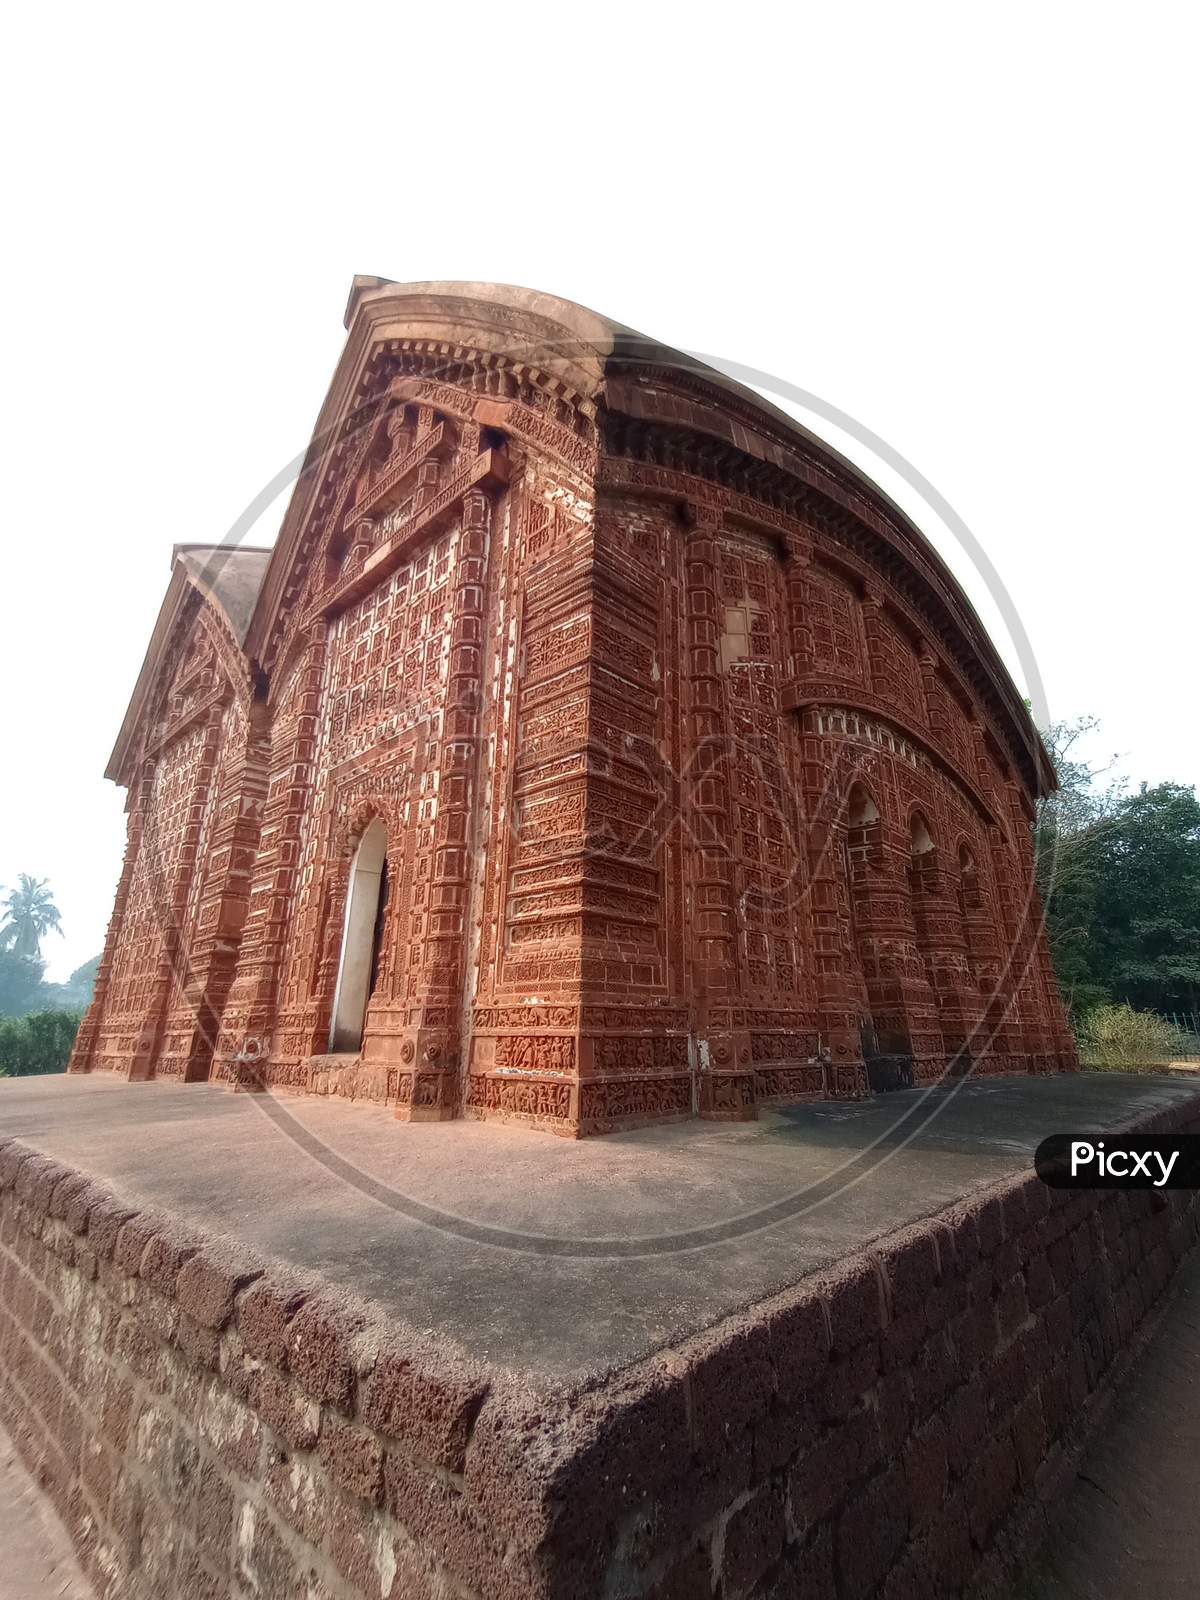 Terracotta temple at Bishnupur